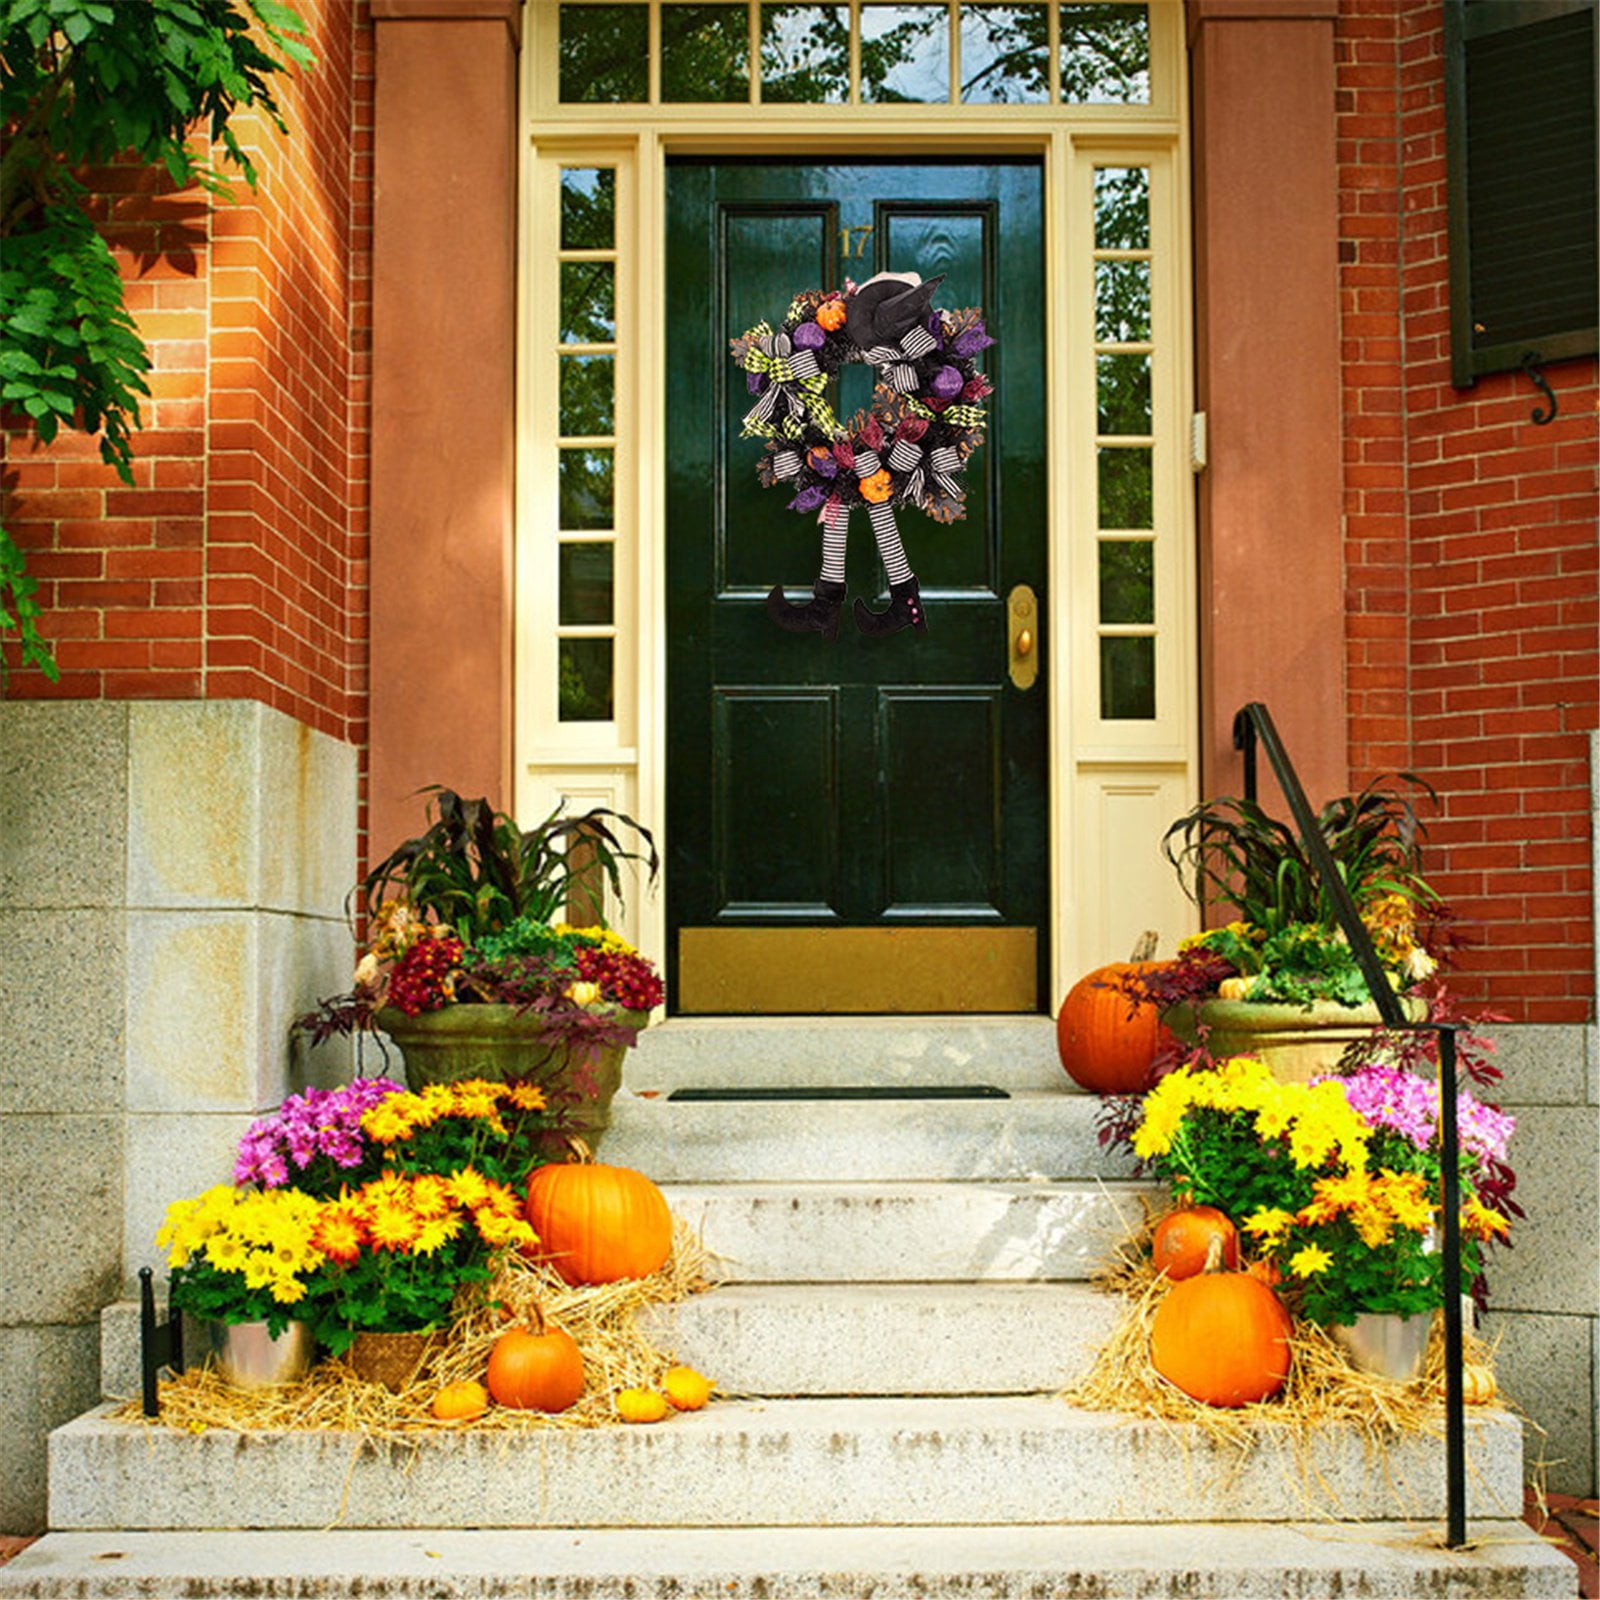 Happy Halloween Wreath 24Inch Witch Hat Legs Pumpkin Door Decorations Artificial Handmade Wreath for Front Door or Indoor Wall Decor